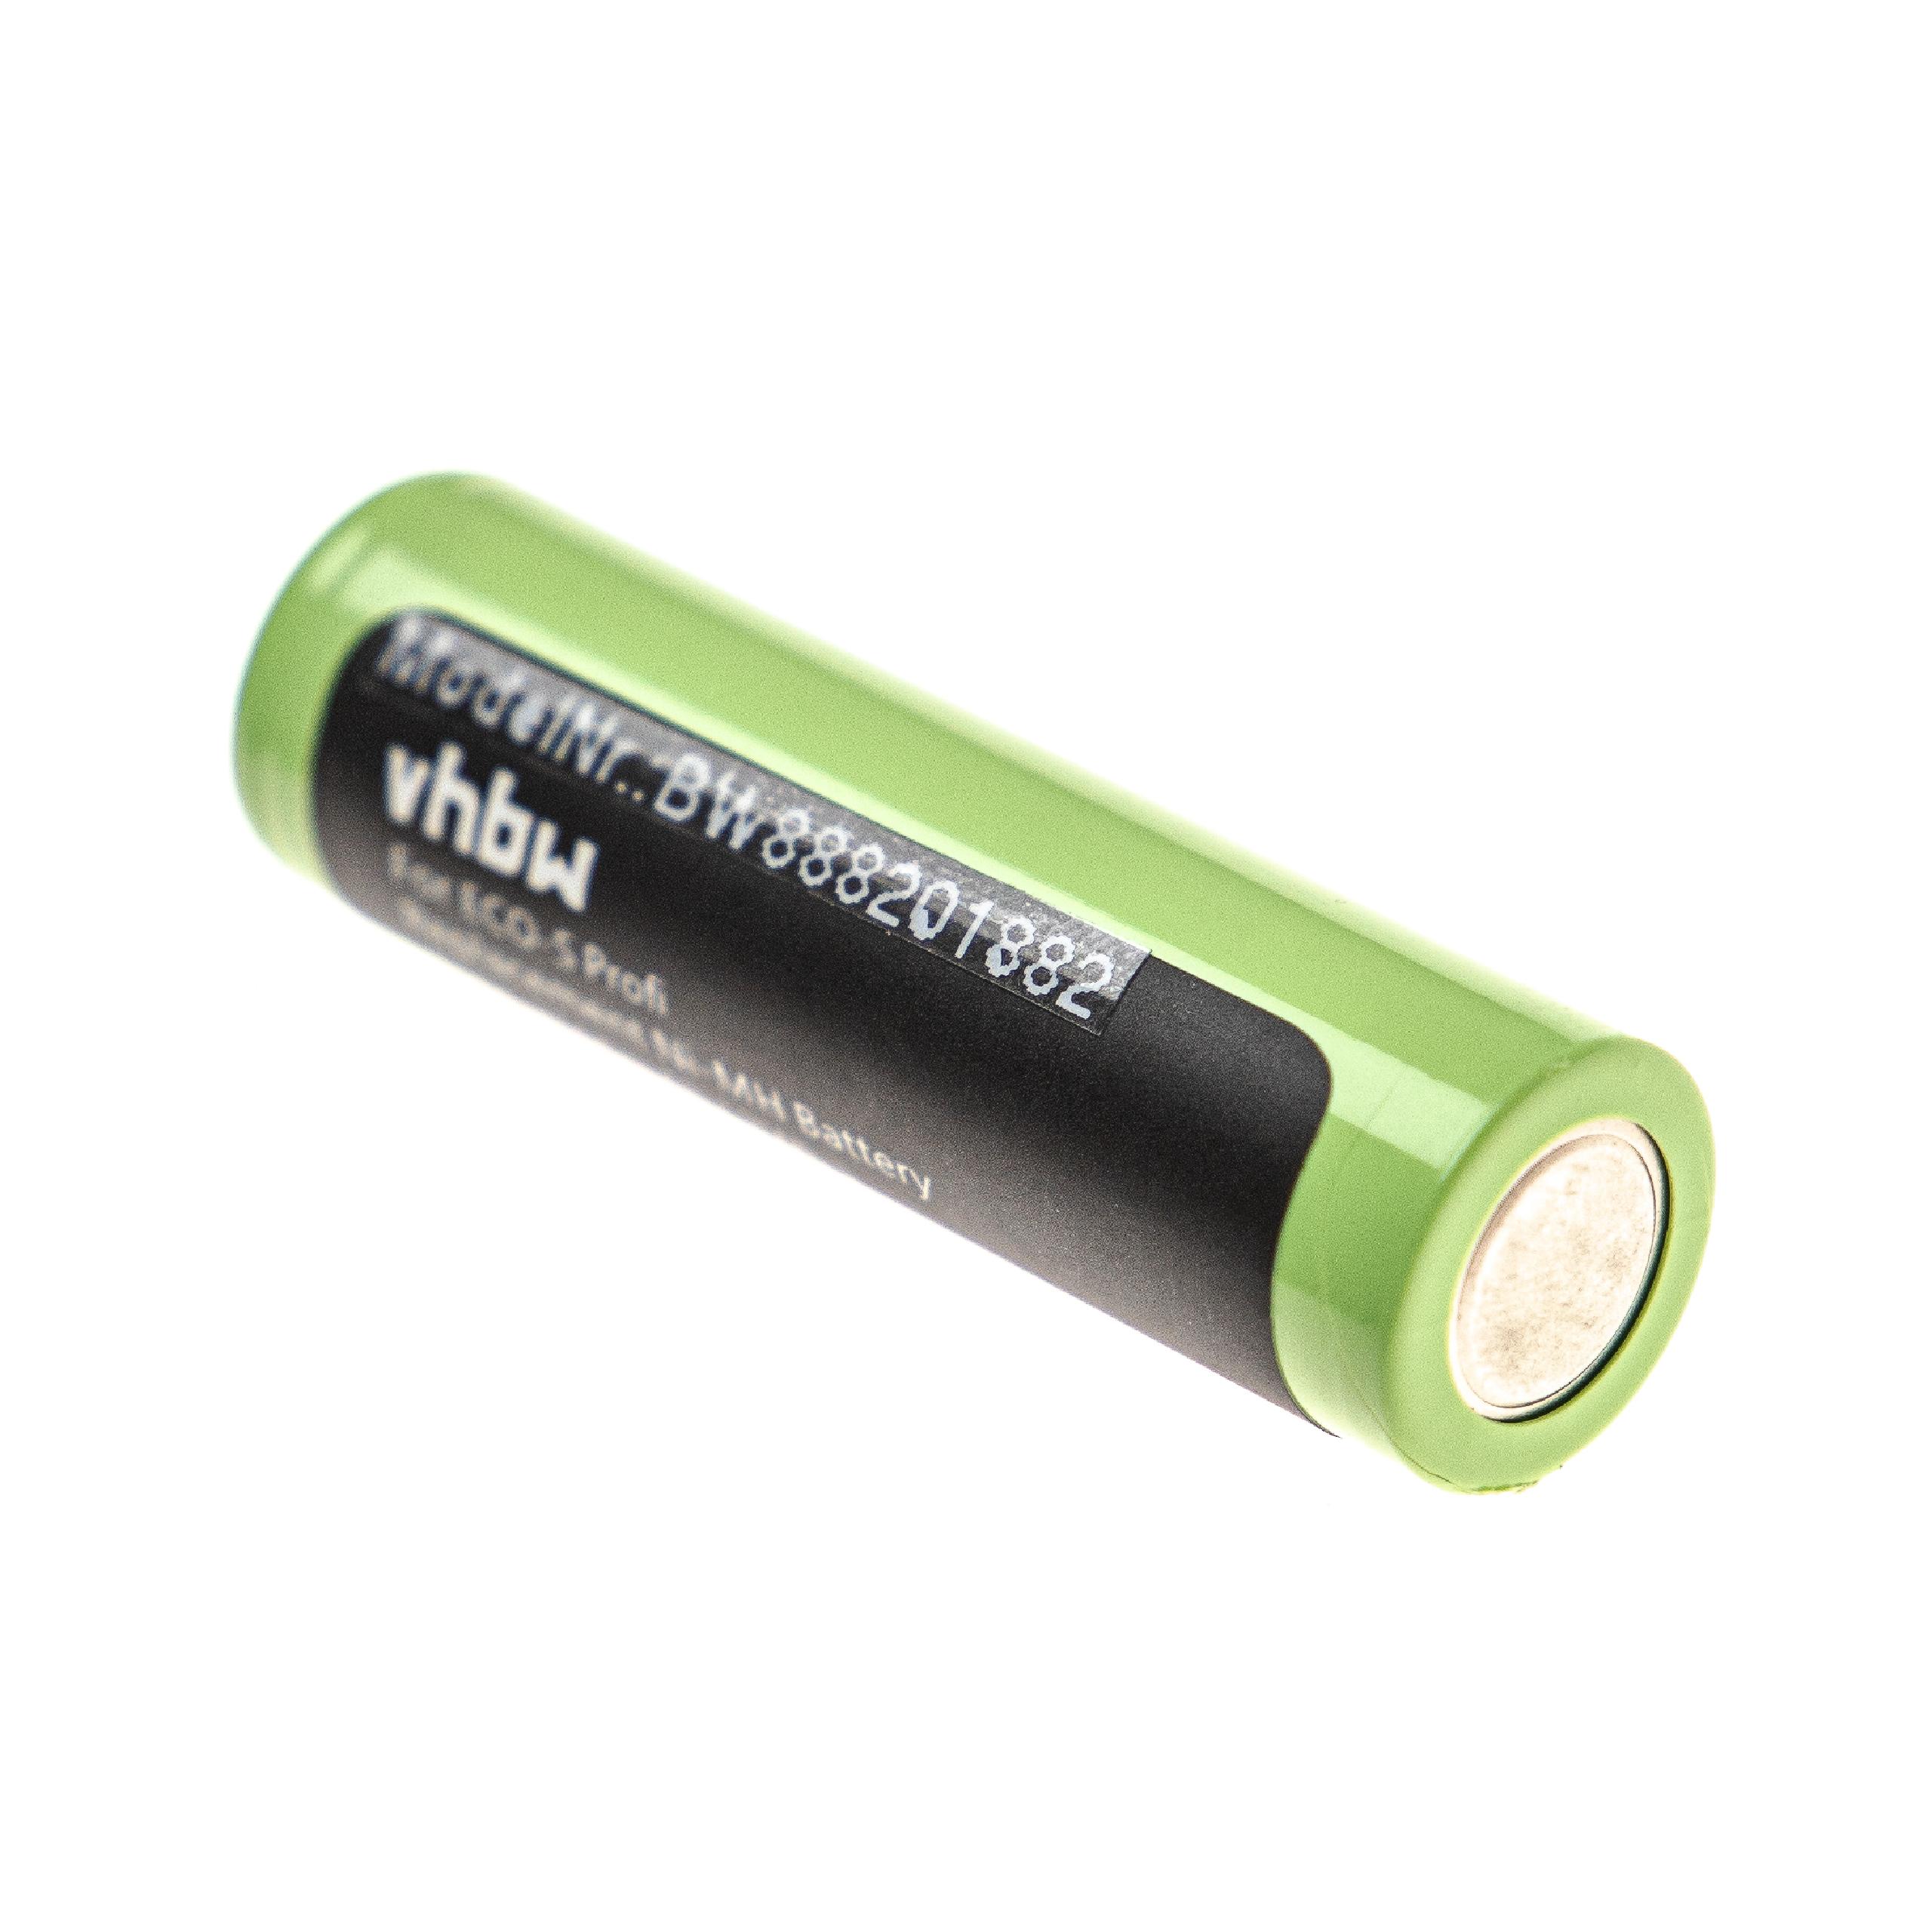 Batería para afeitadora Tondeo ECO-S - 2500 mAh 1,2 V NiMH